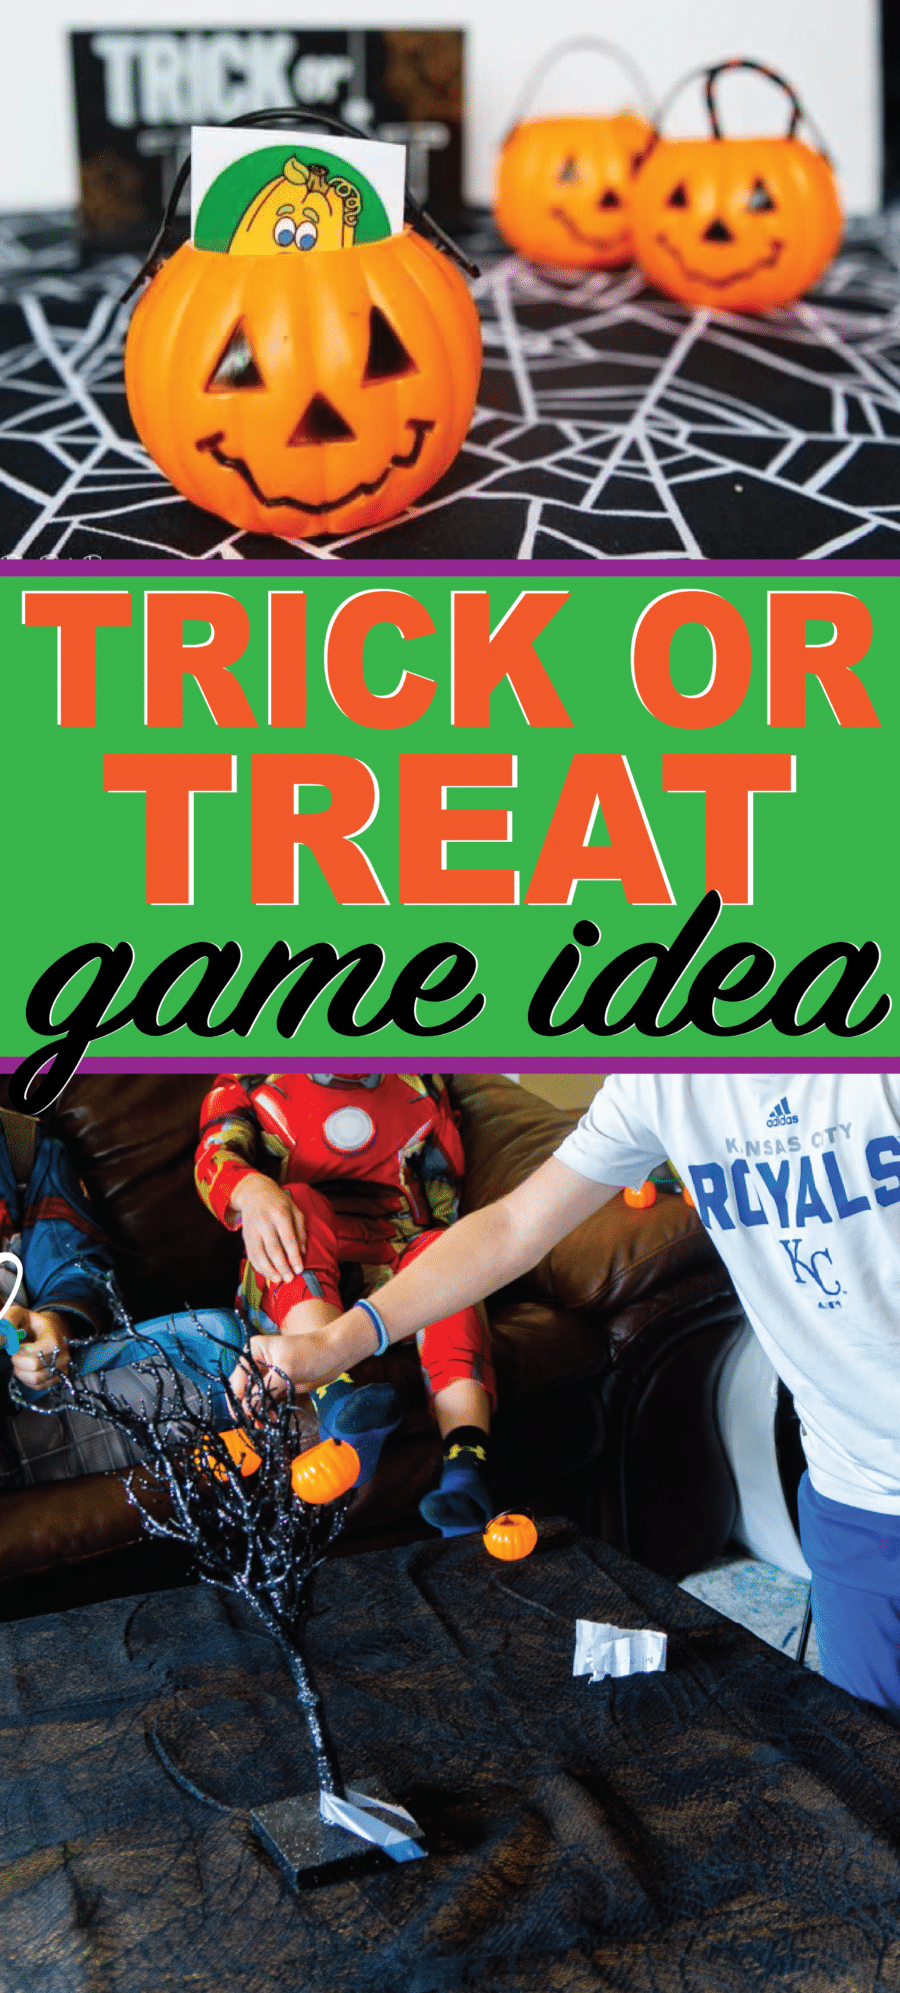 Zahrajte si tento trik nebo halloweenskou hru s dětmi všech věkových skupin! Ideální pro večírek ve třídě nebo halloweenskou noc!